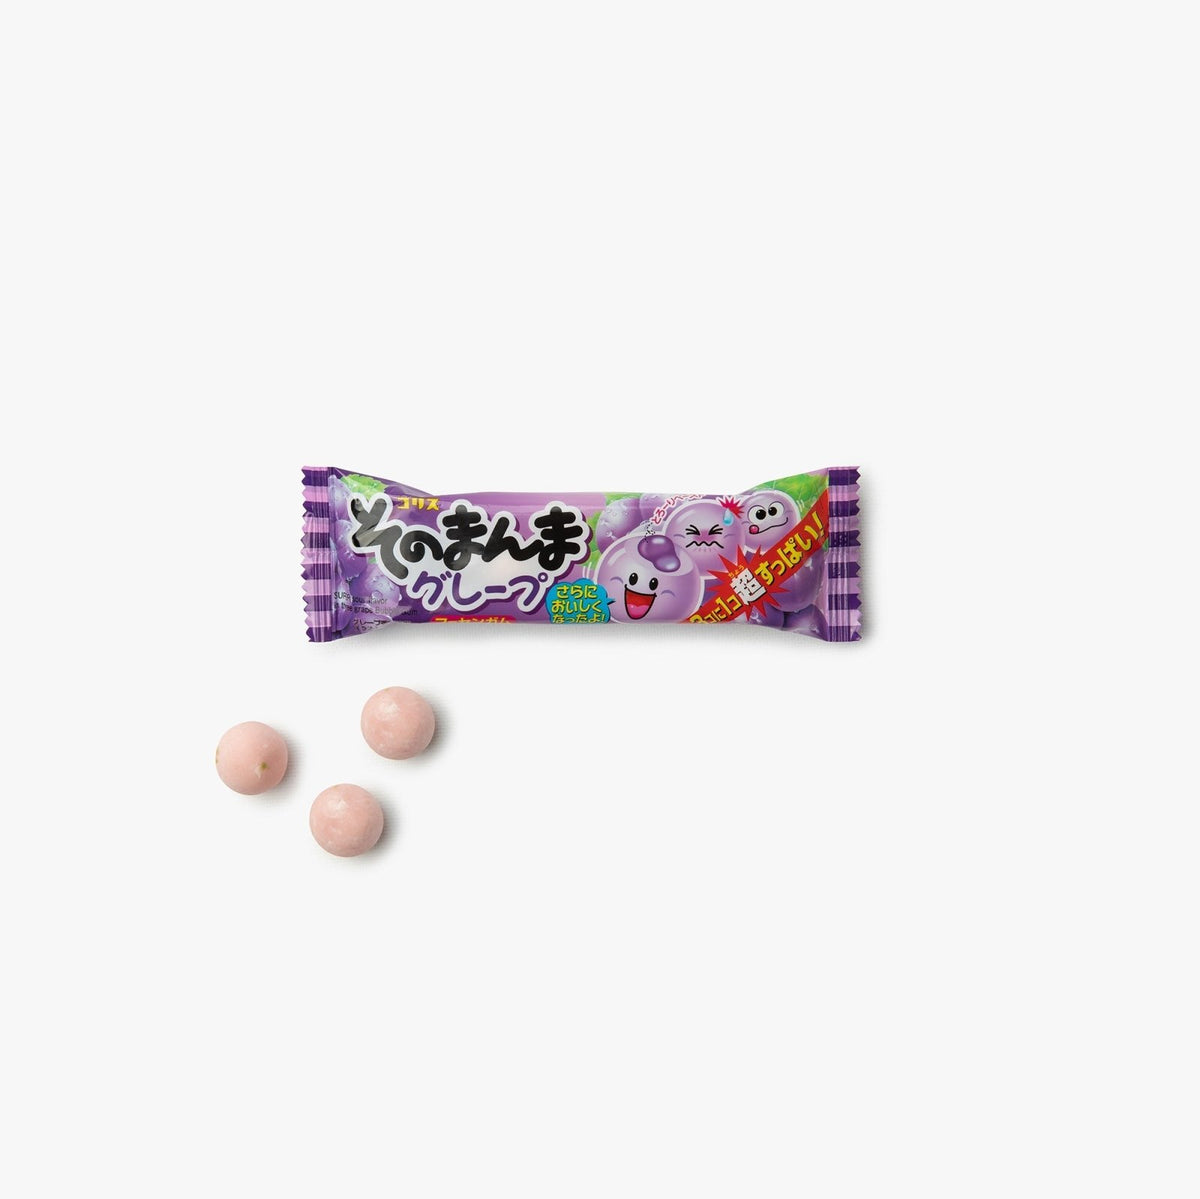 Chewing-gum cœur fondant au raisin - 14g - Coris - iRASSHAi